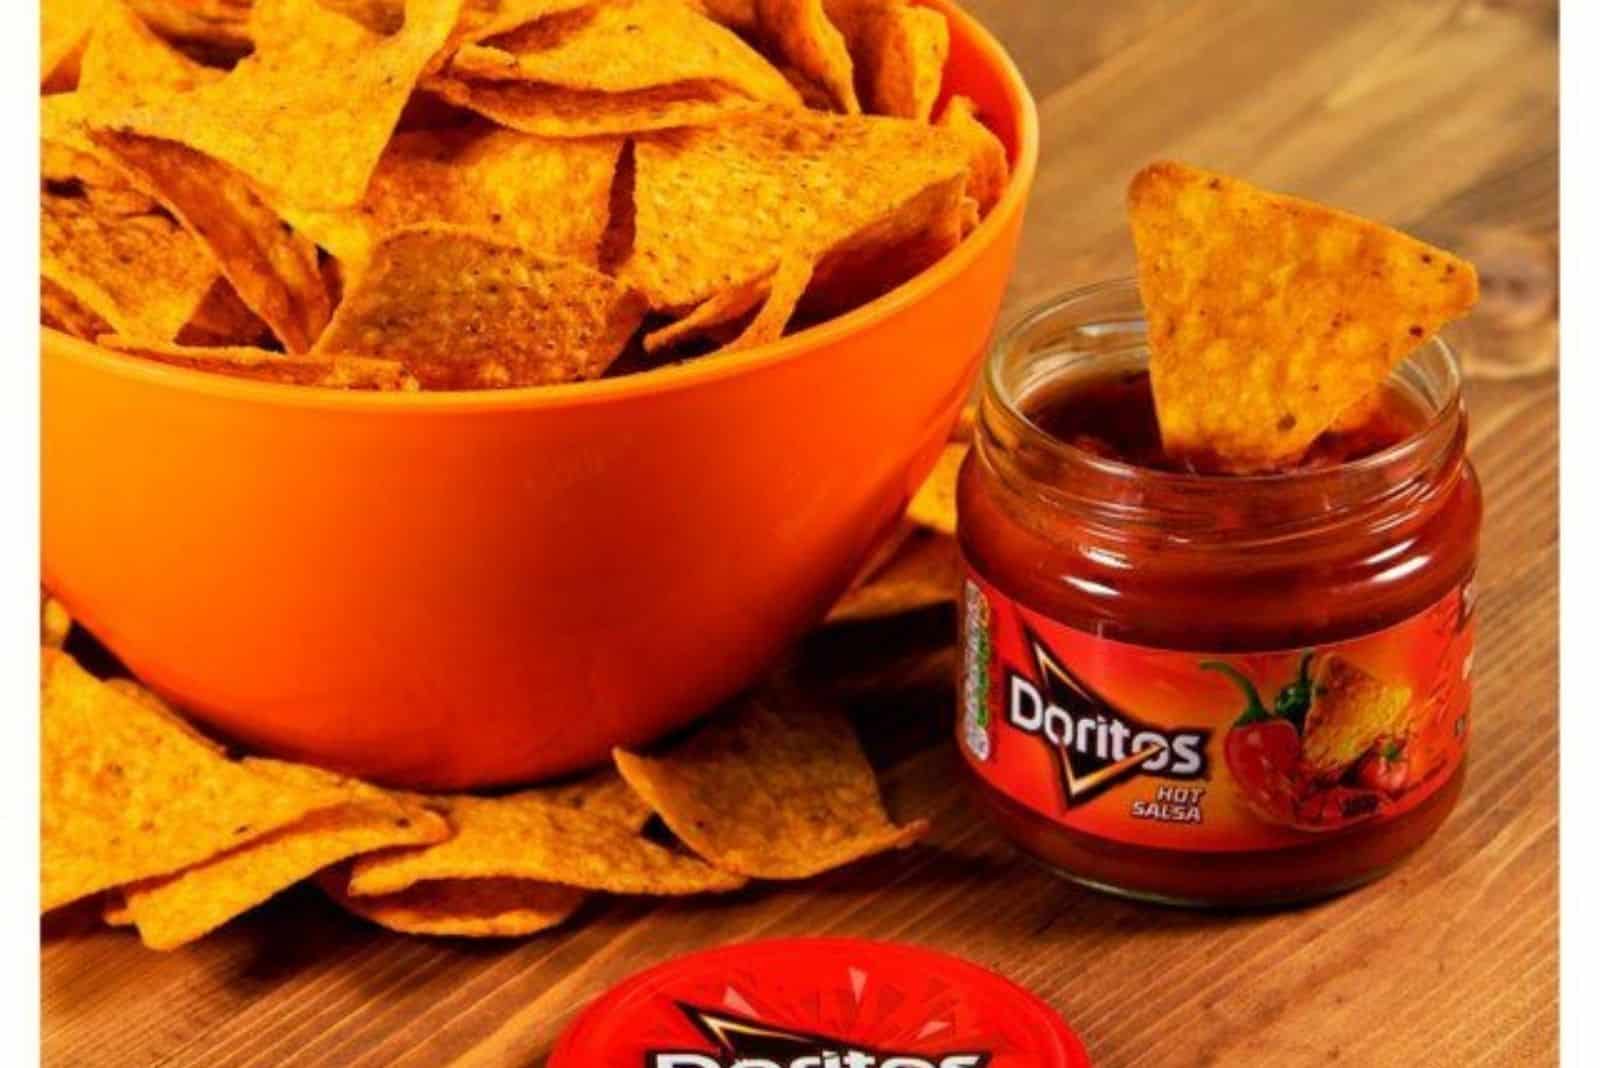 doritos in a bowl and doritos sauce